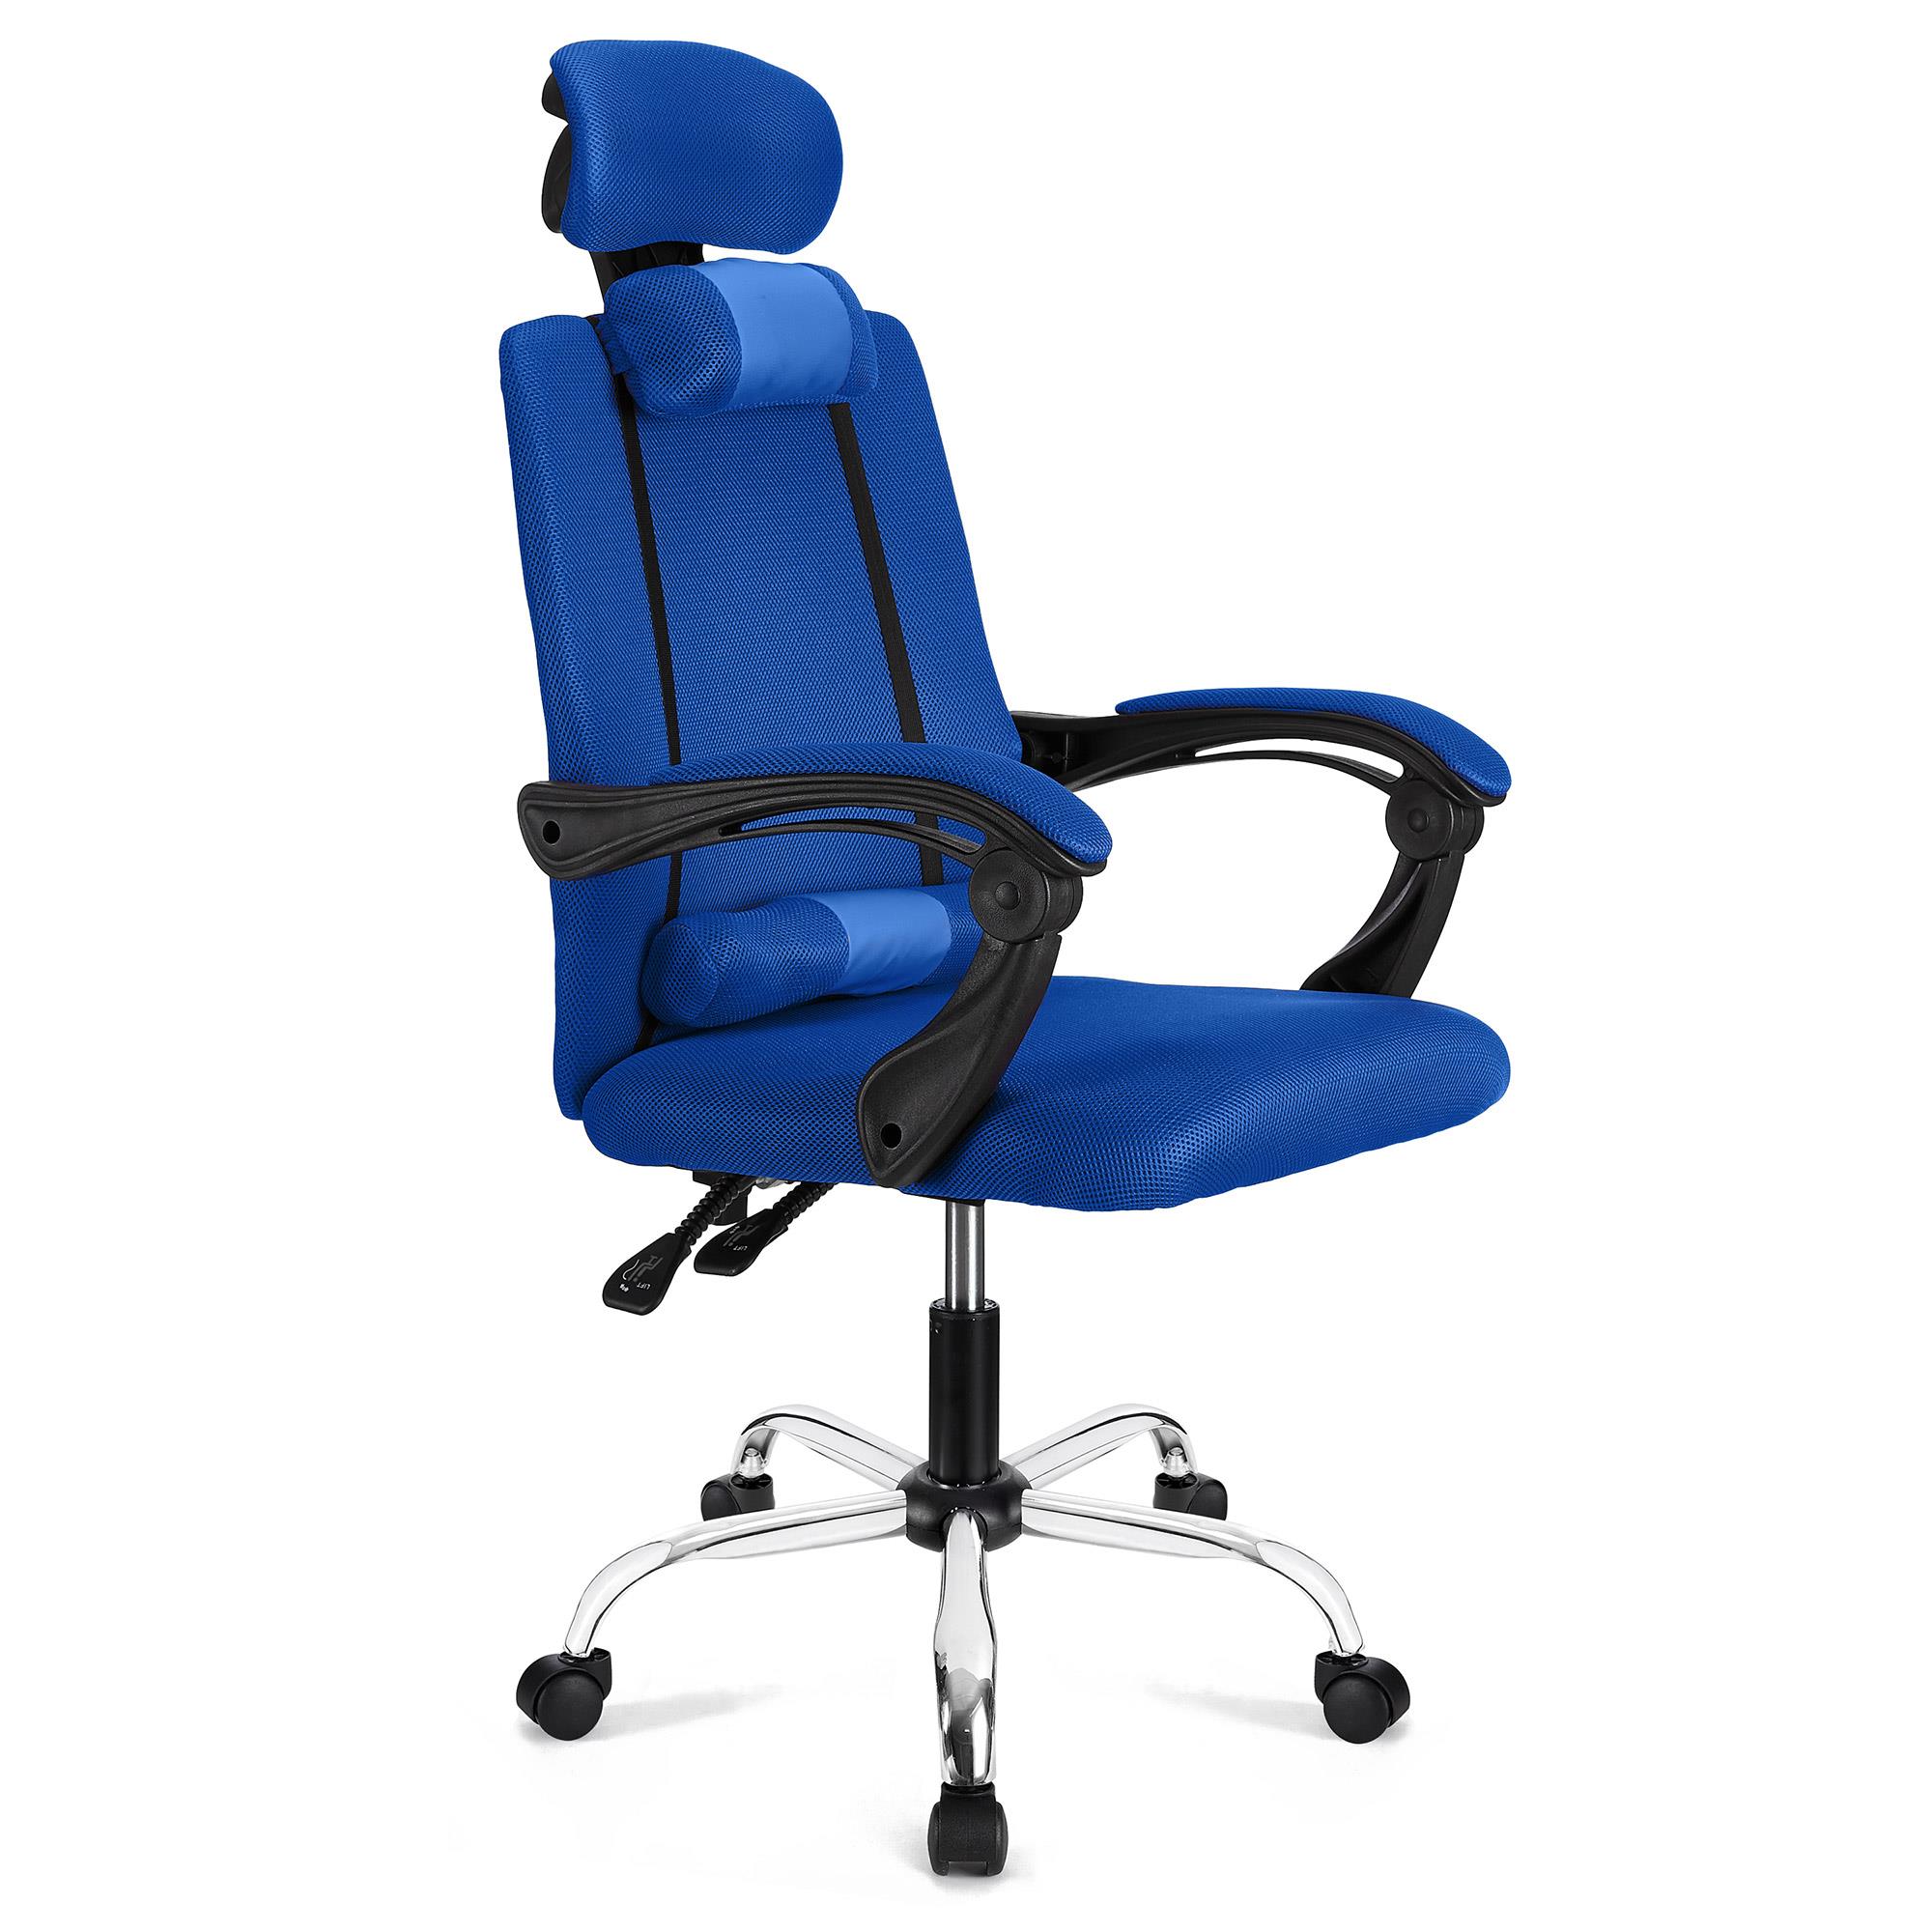 Ergonomischer Bürostuhl FABIO, neigbar, mit Nacken- und Lordosekissen, atmungsaktiver Netzstoffbezug, Farbe Blau